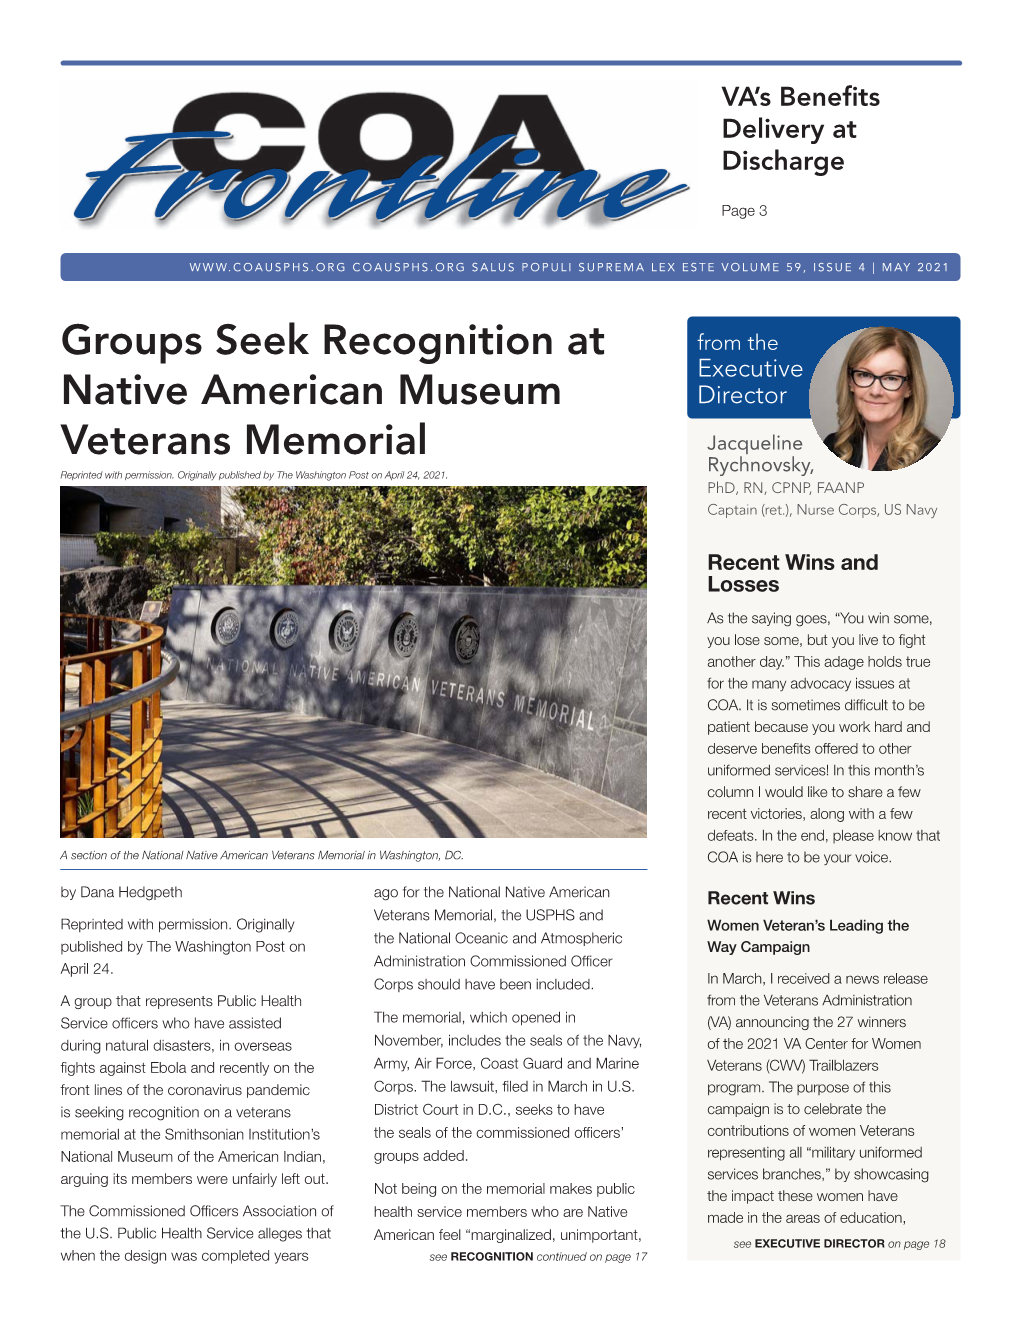 Groups Seek Recognition at Native American Museum Veterans Memorial